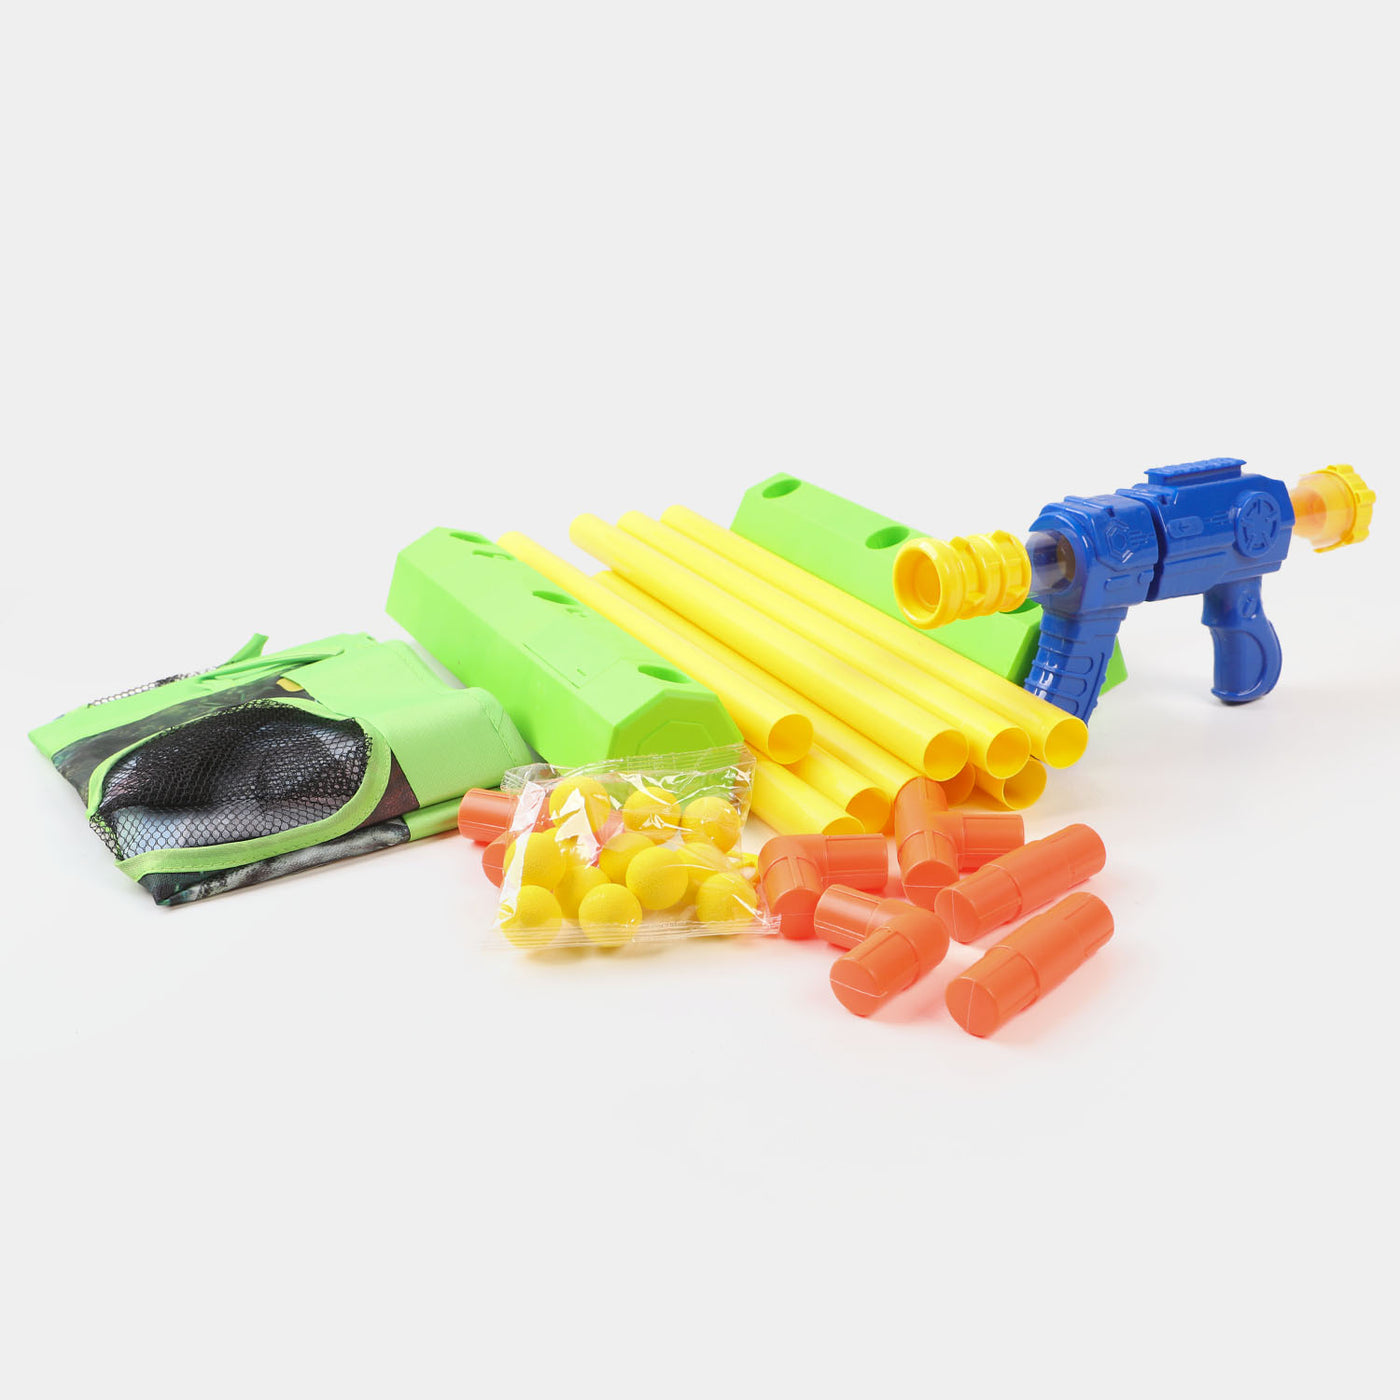 Target Shooting Gun Set For Kids